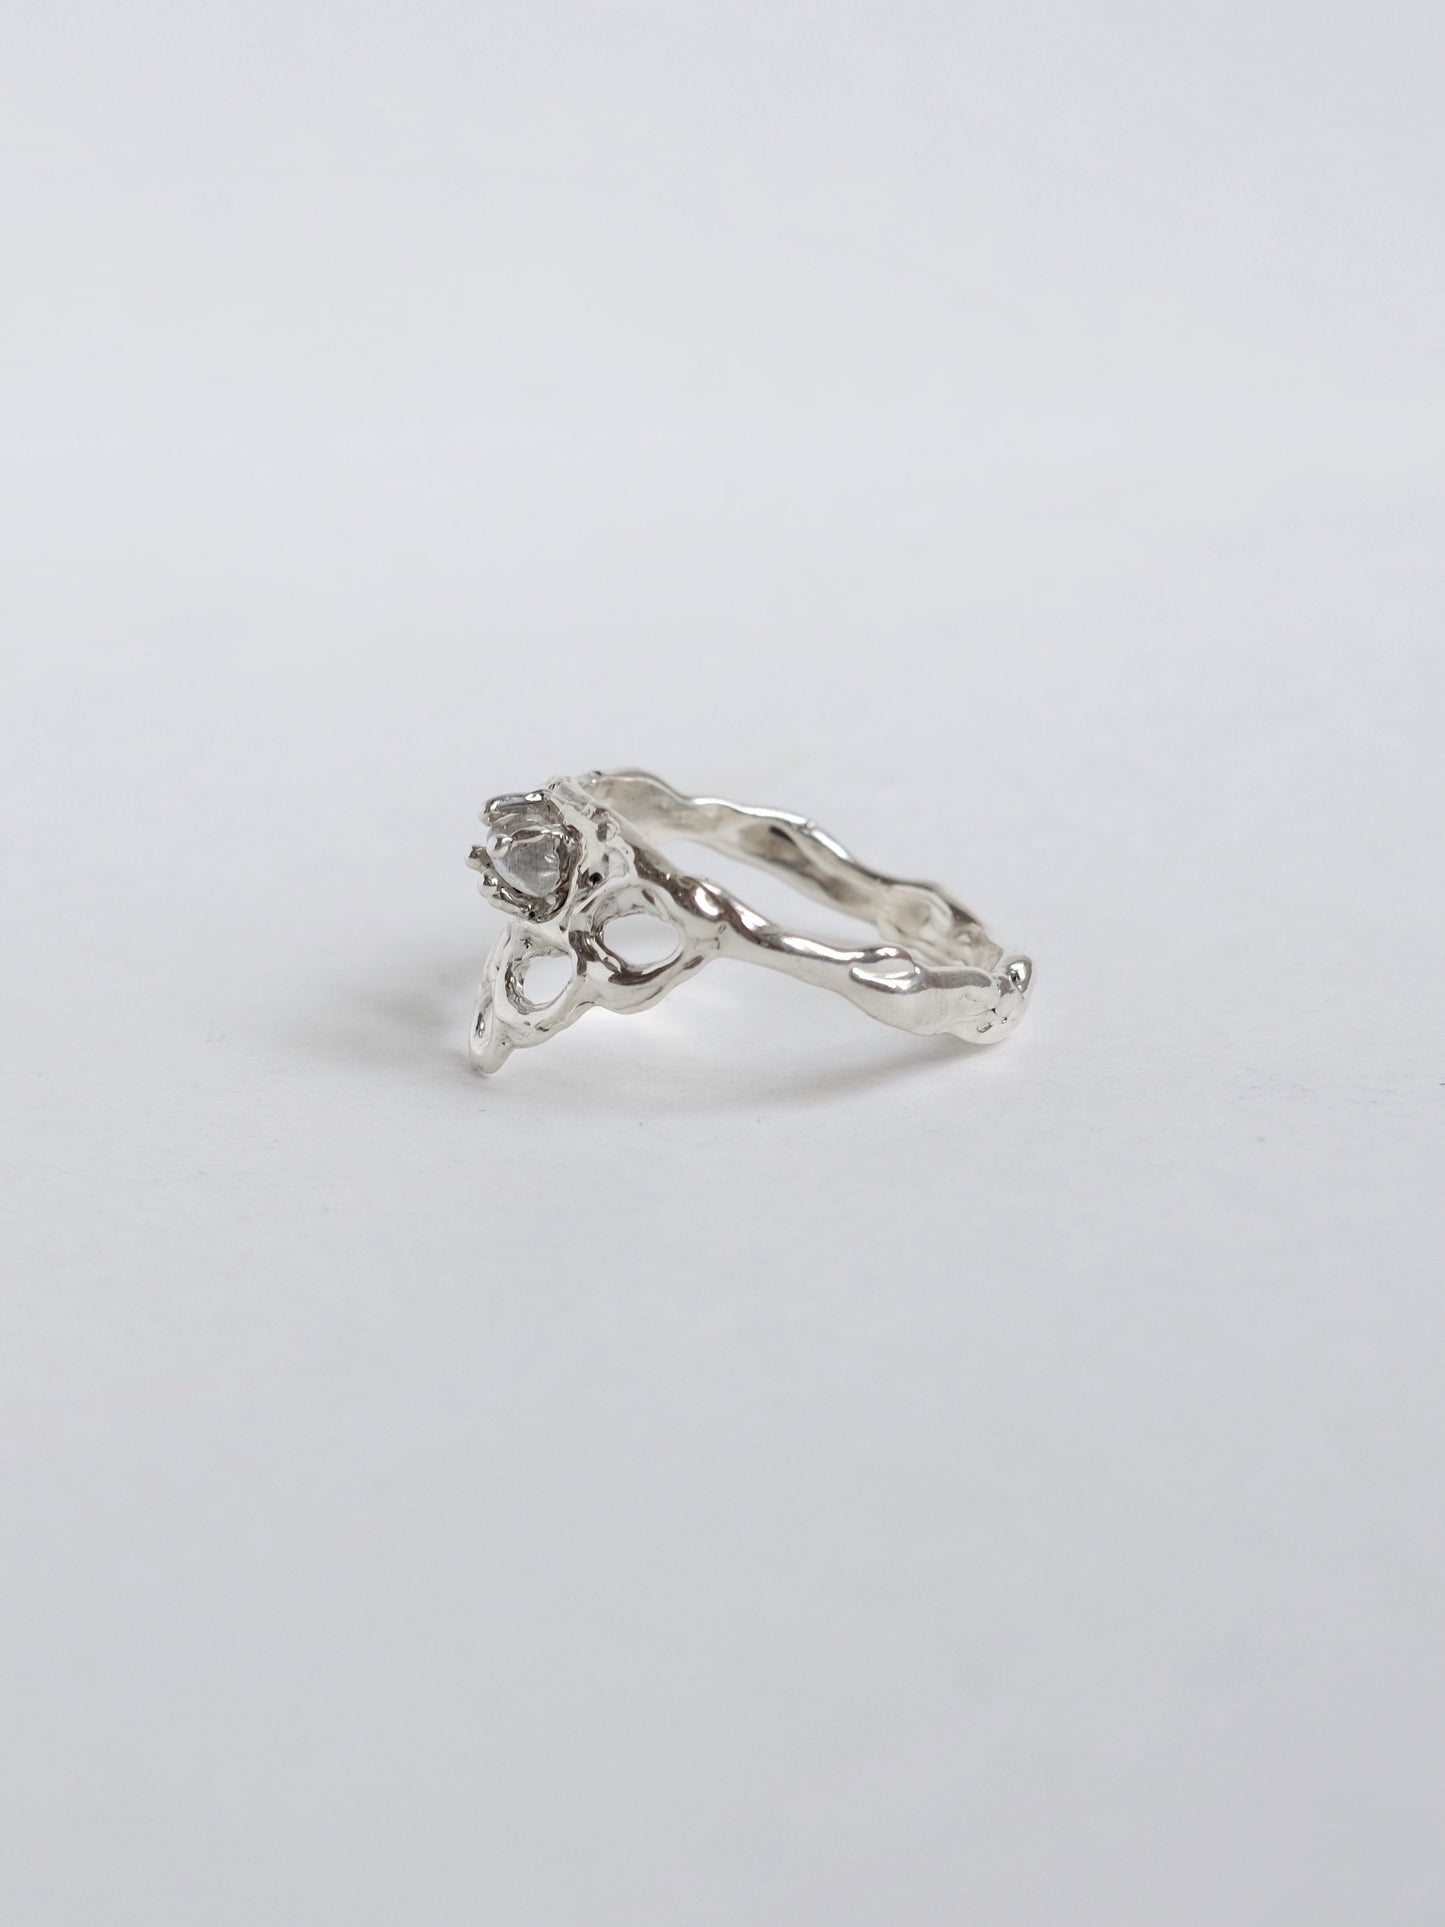 Ring with "Labradorite"